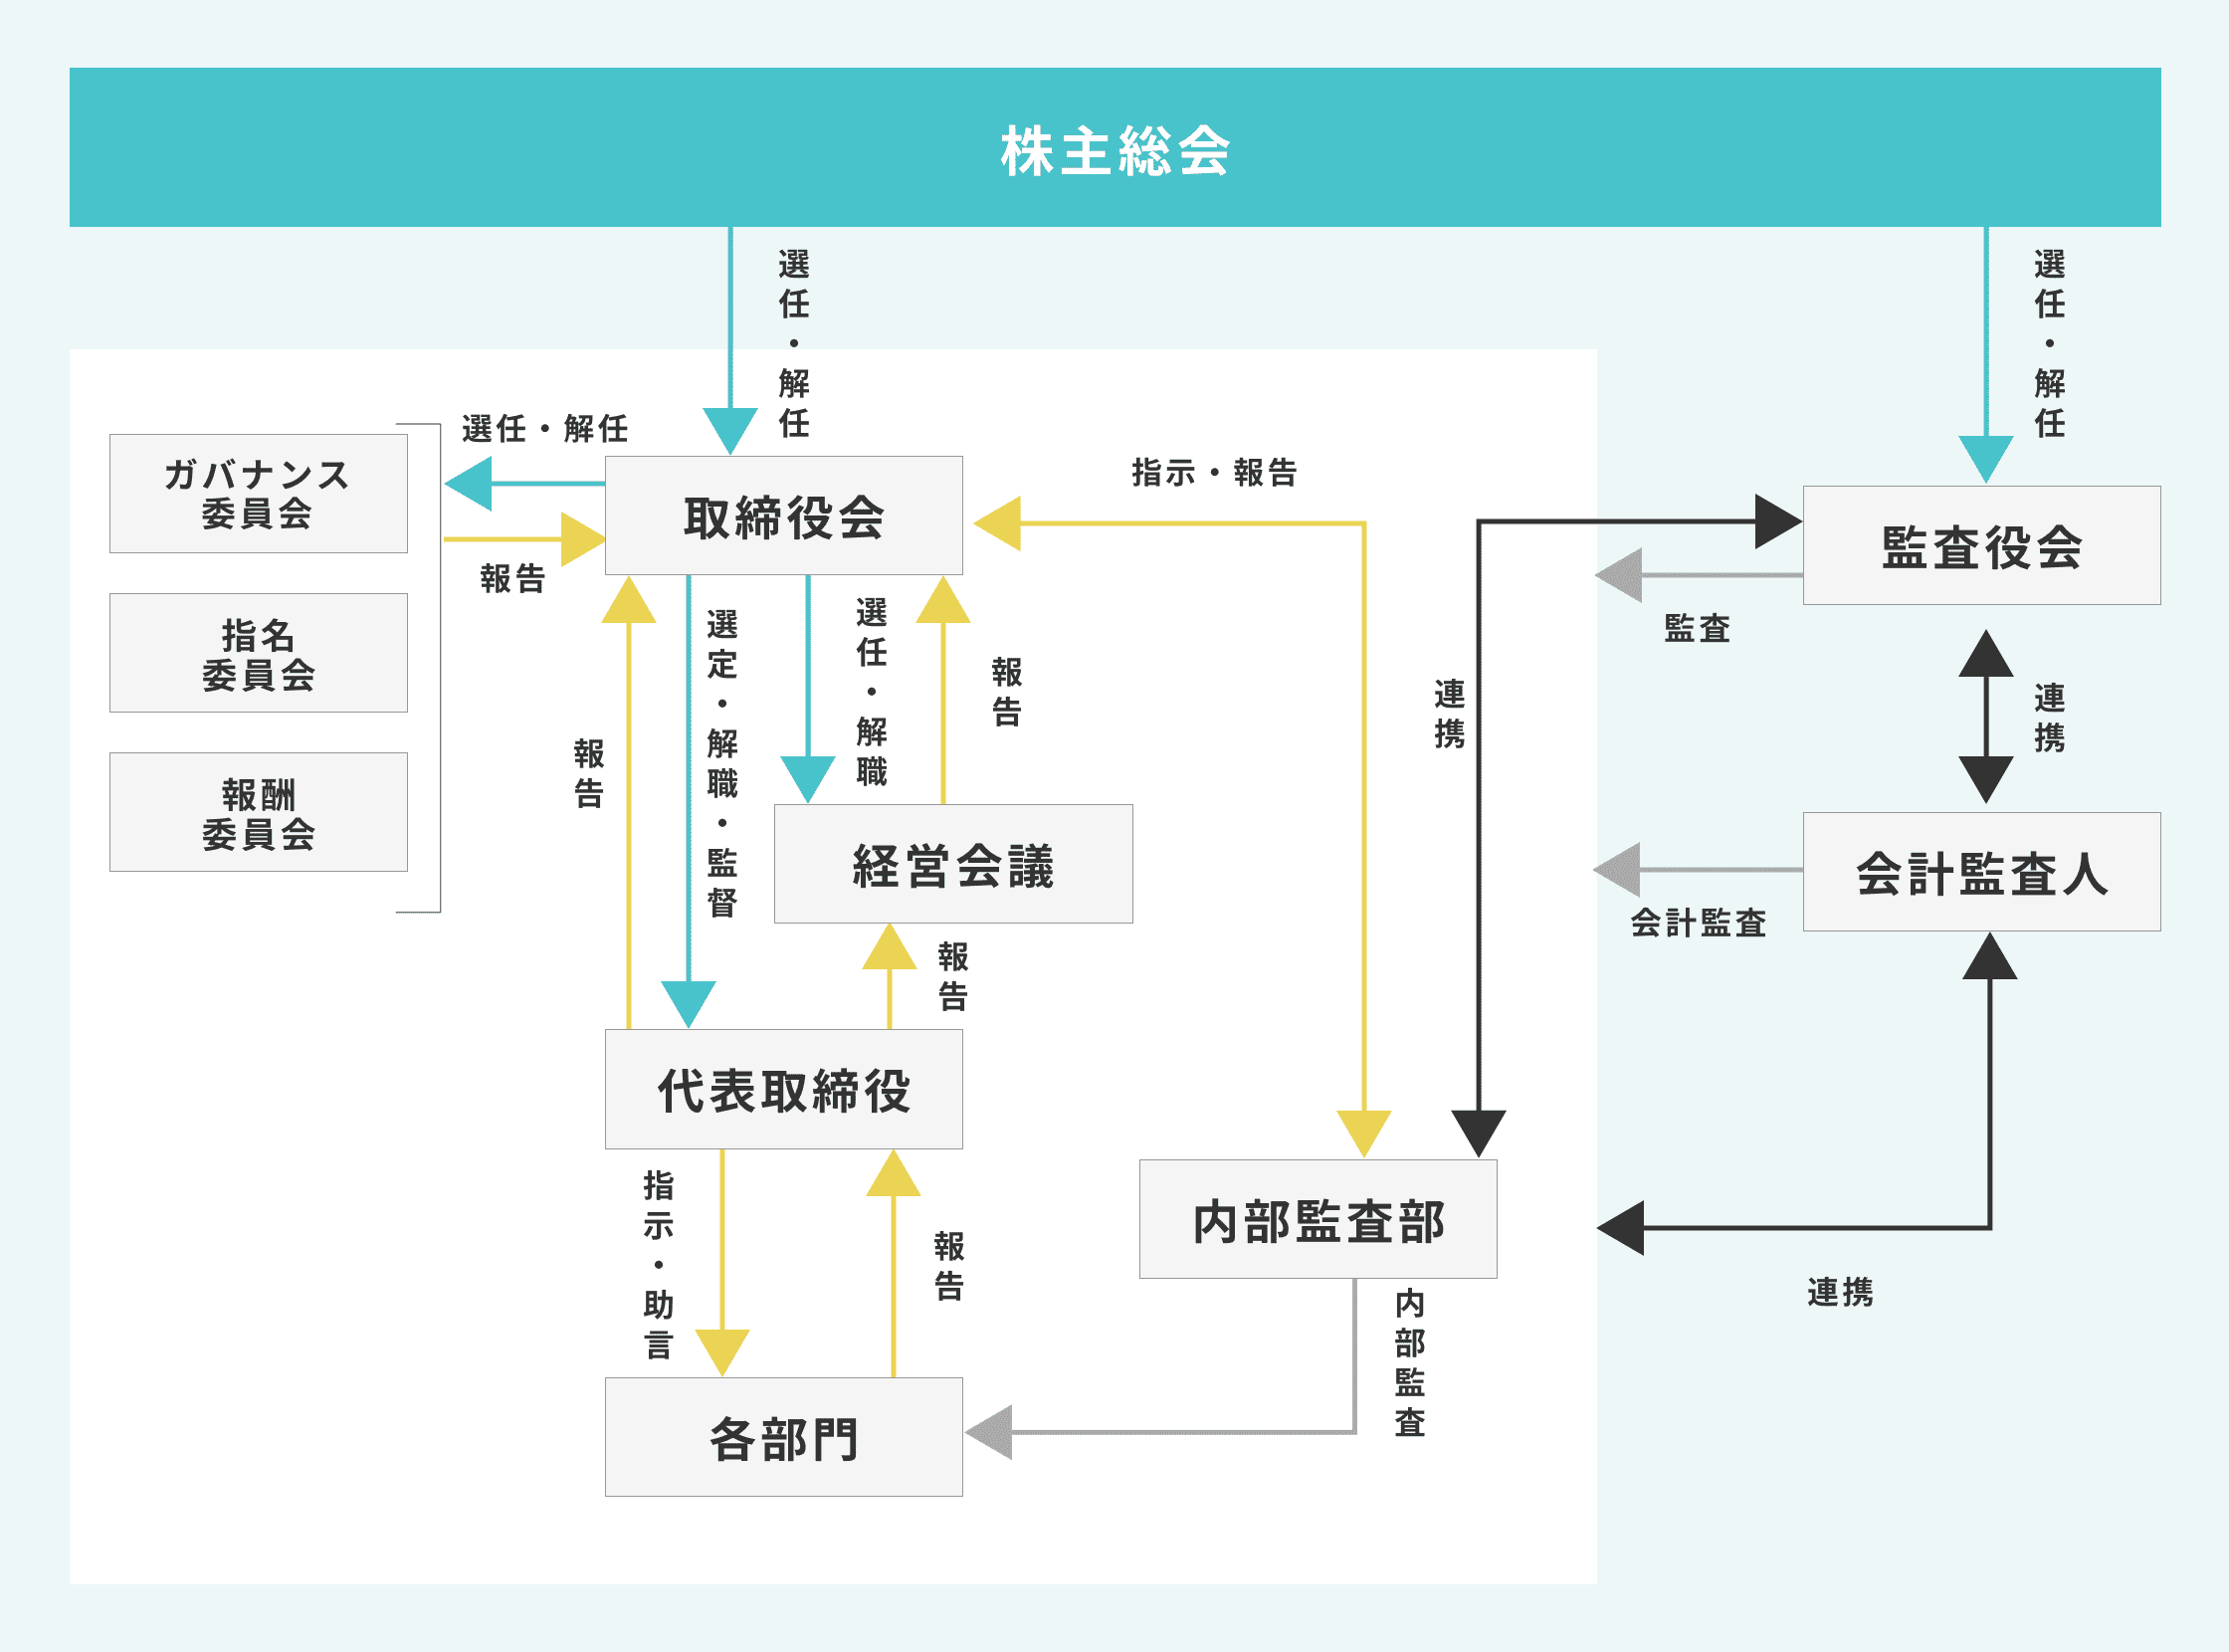 当社の経営組織/その他コーポレート・ガバナンス体制の模式図